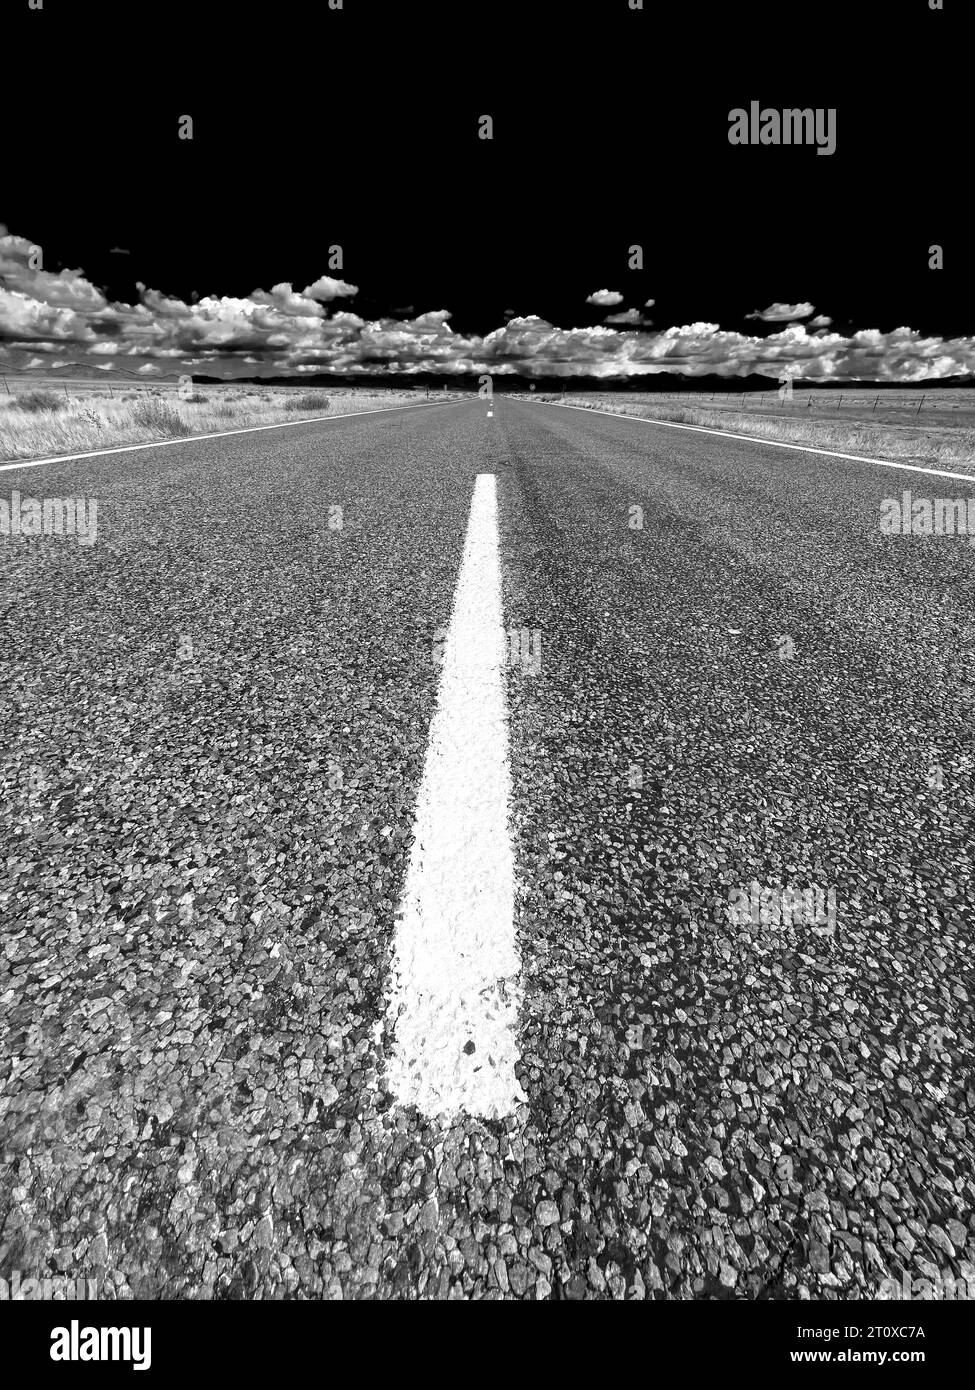 Photographie dramatique en noir et blanc d'une route rurale vide Banque D'Images